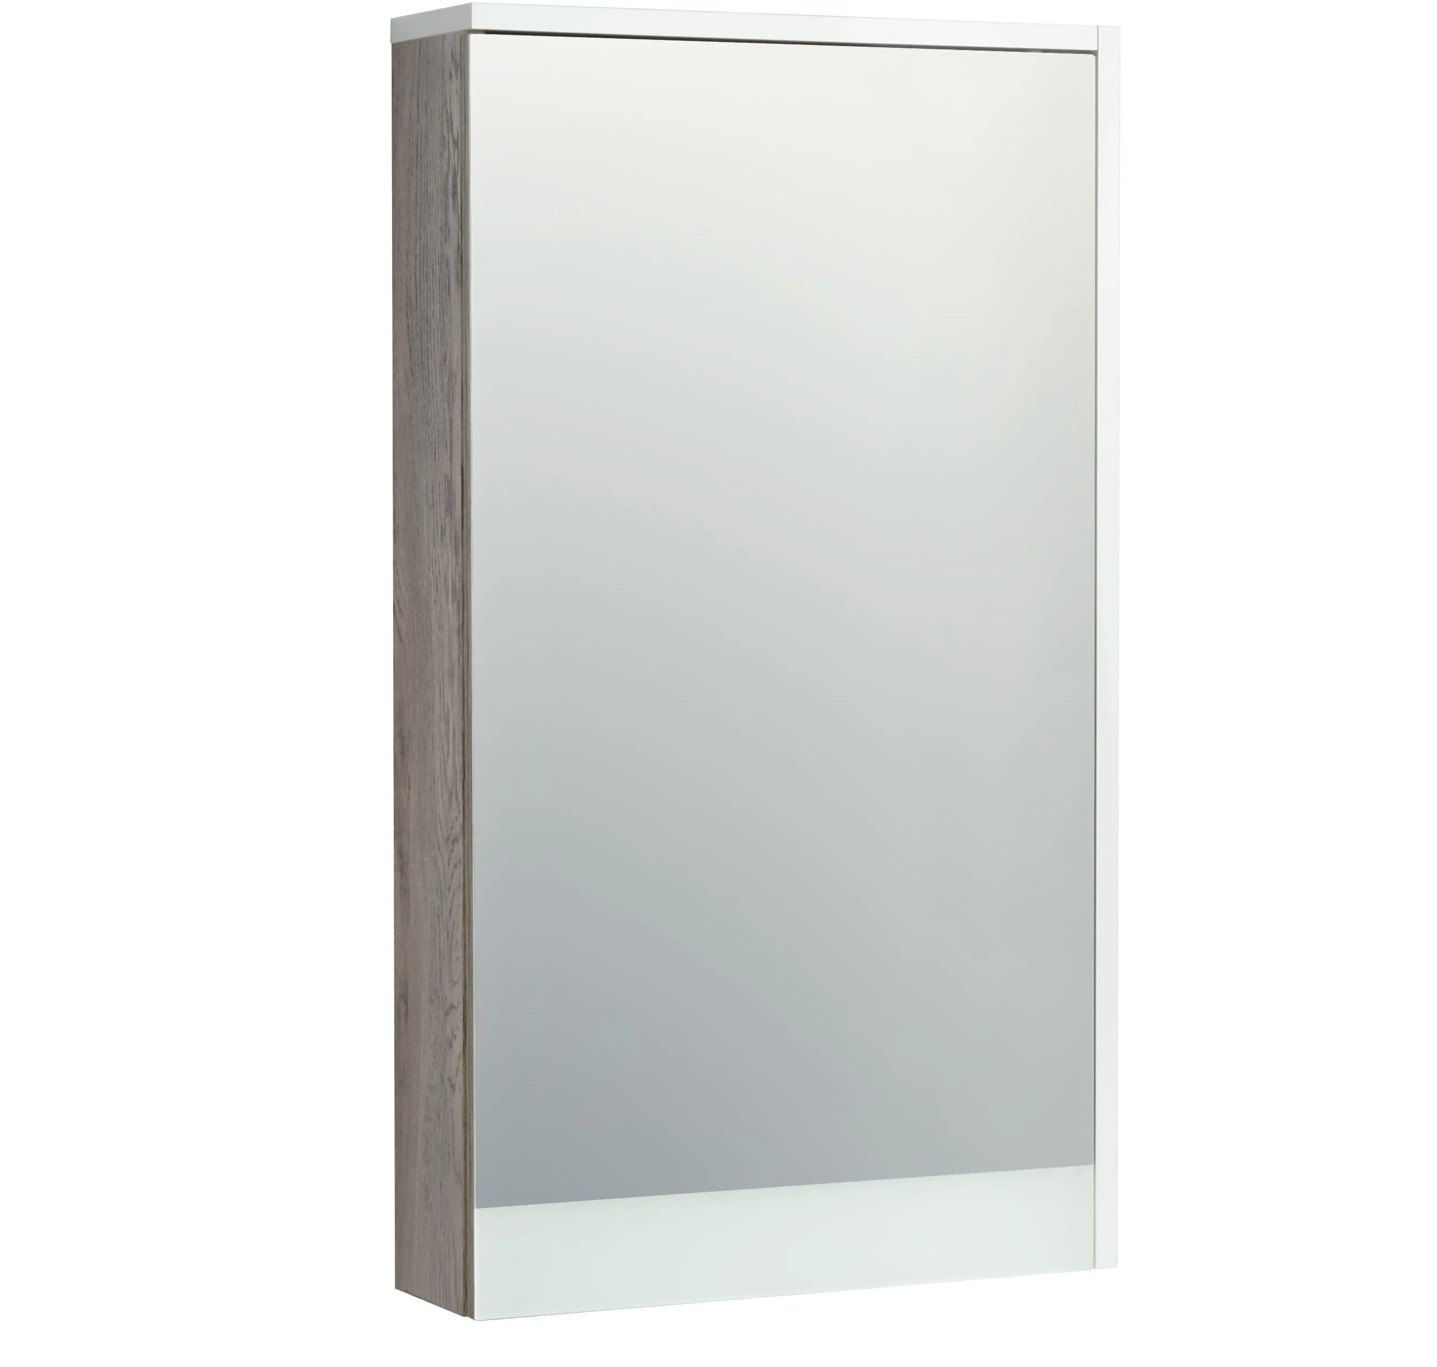 Зеркальный шкаф Акватон Эмма Белый/Дуб Навара 1A221802EAD80 зеркало шкаф в ванную aquaton эмма 1a221802ead80 белый дуб наварра